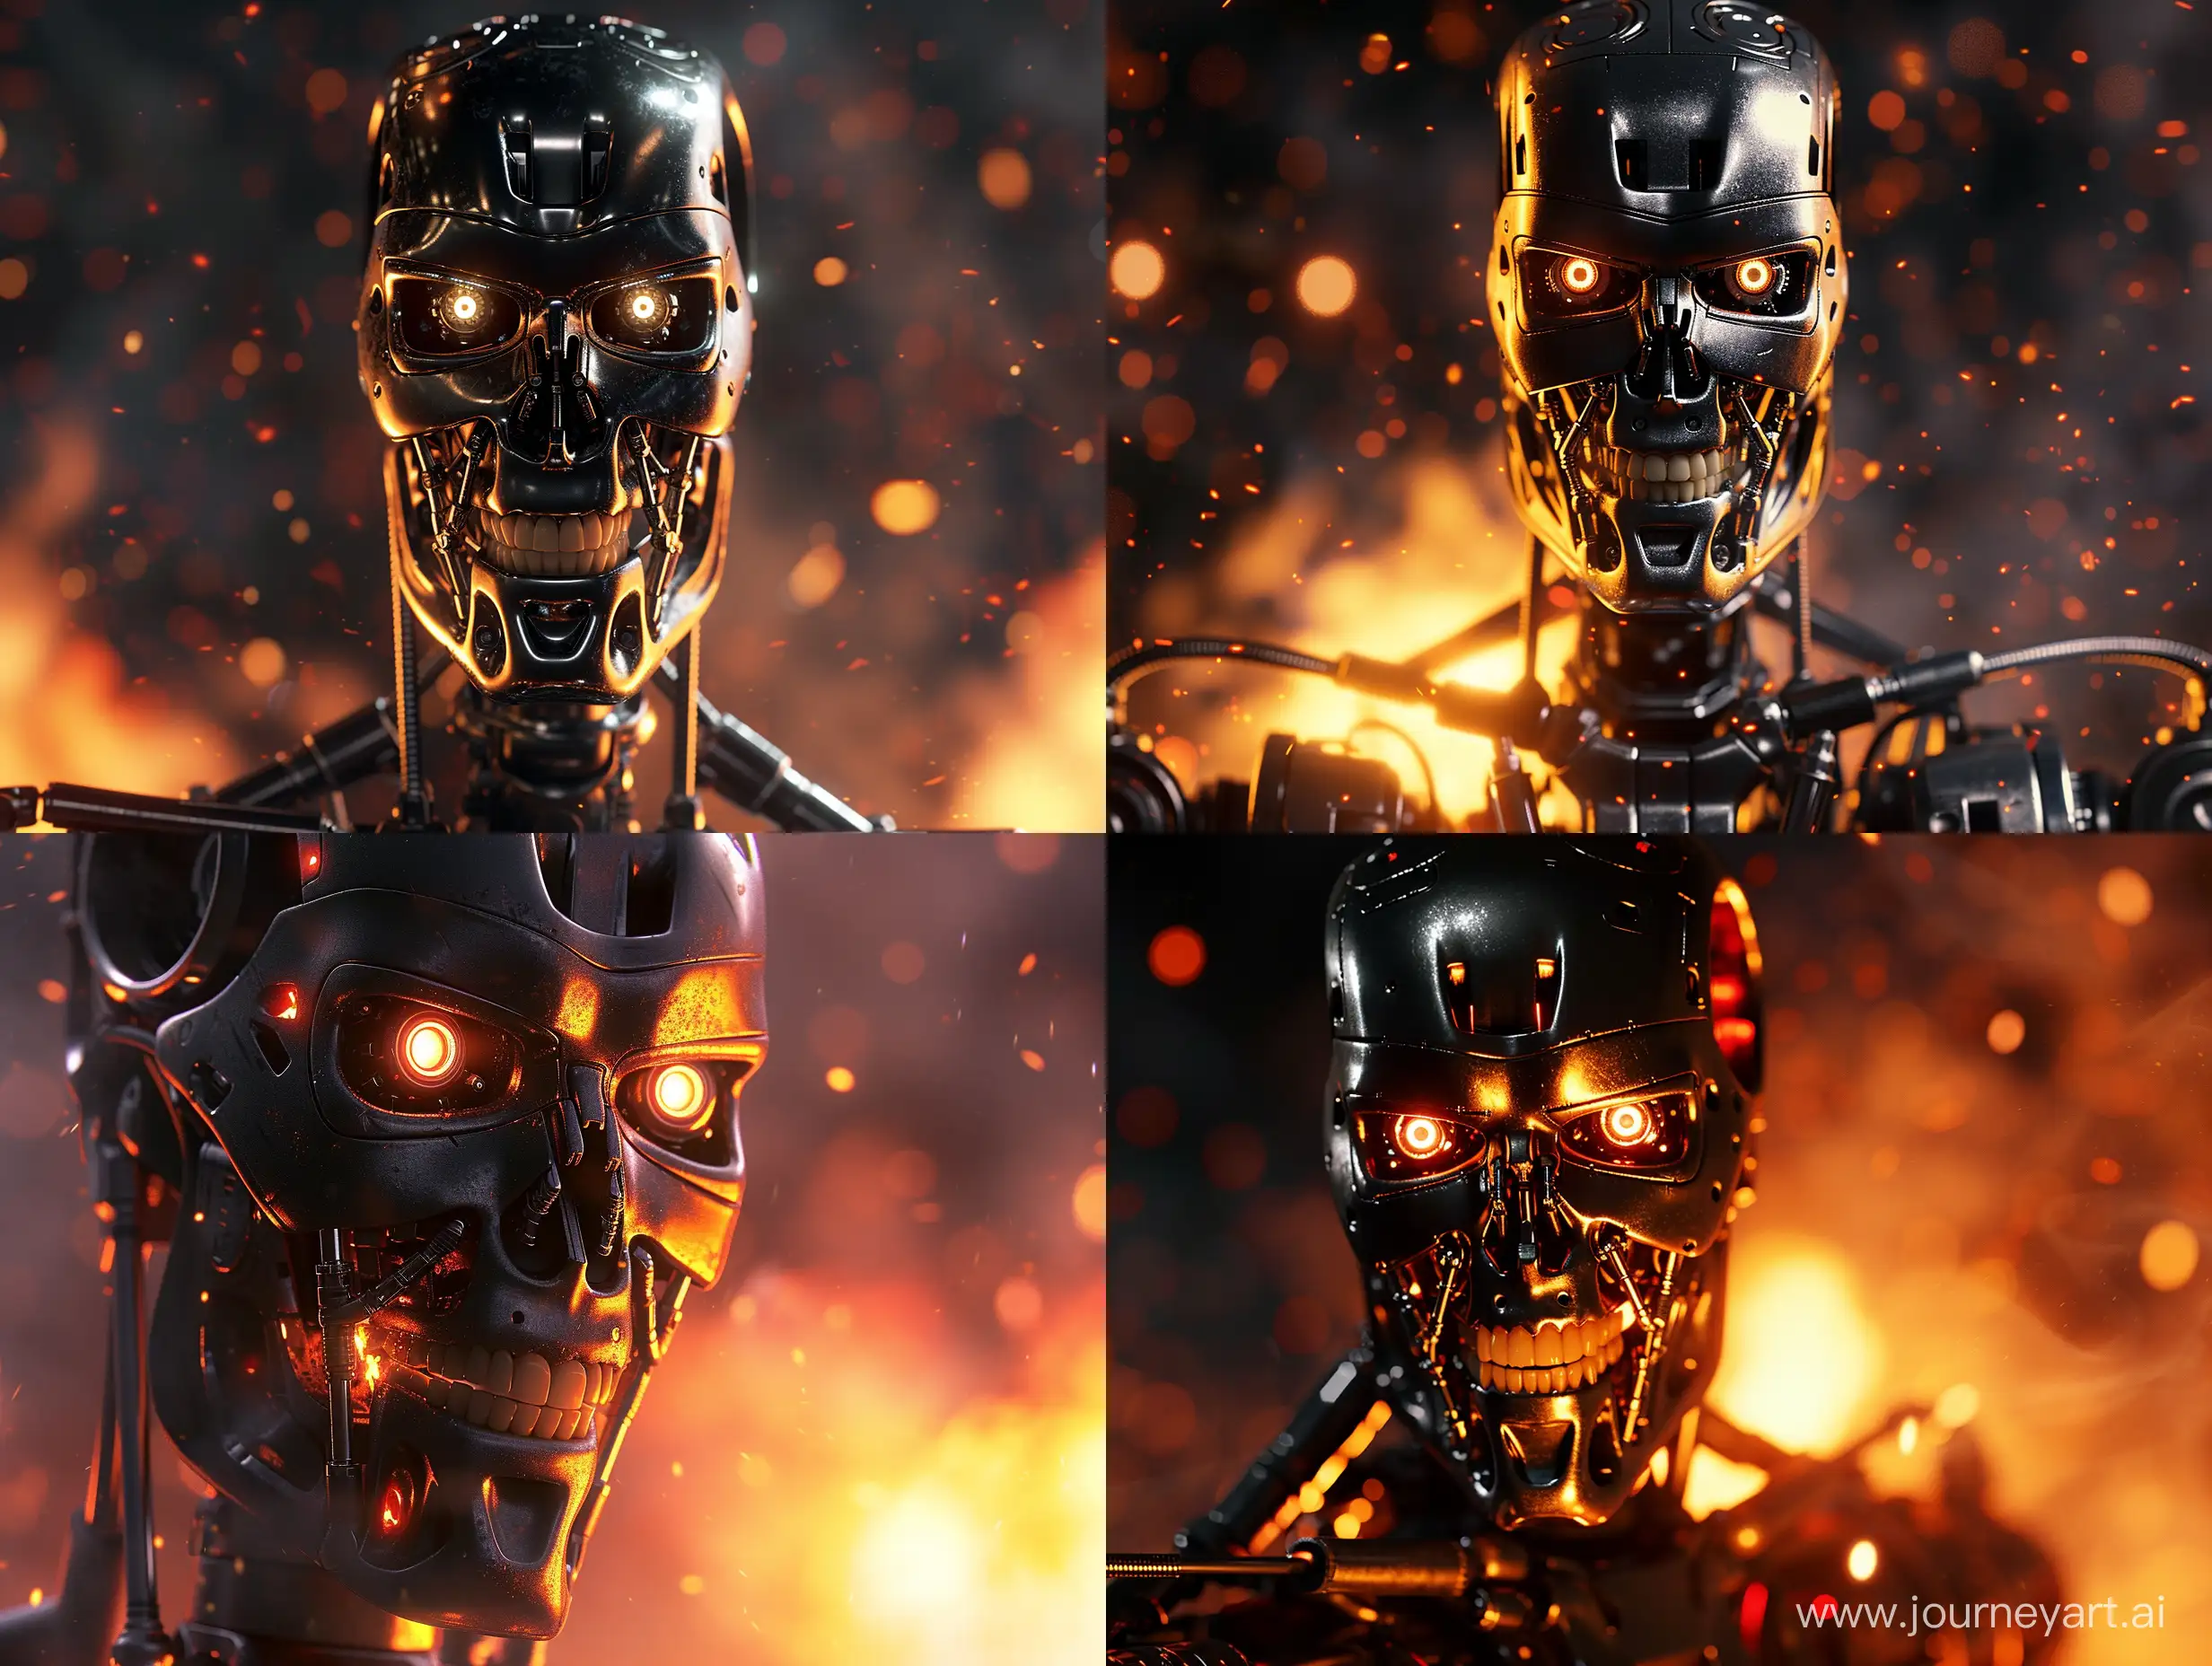 страшный и реалистичный Робот терминатор угрожающе смотрит, огонь, фотореализм, крупный план, блеск, отражения метала, детали, детализация, дым, свет, темная тема